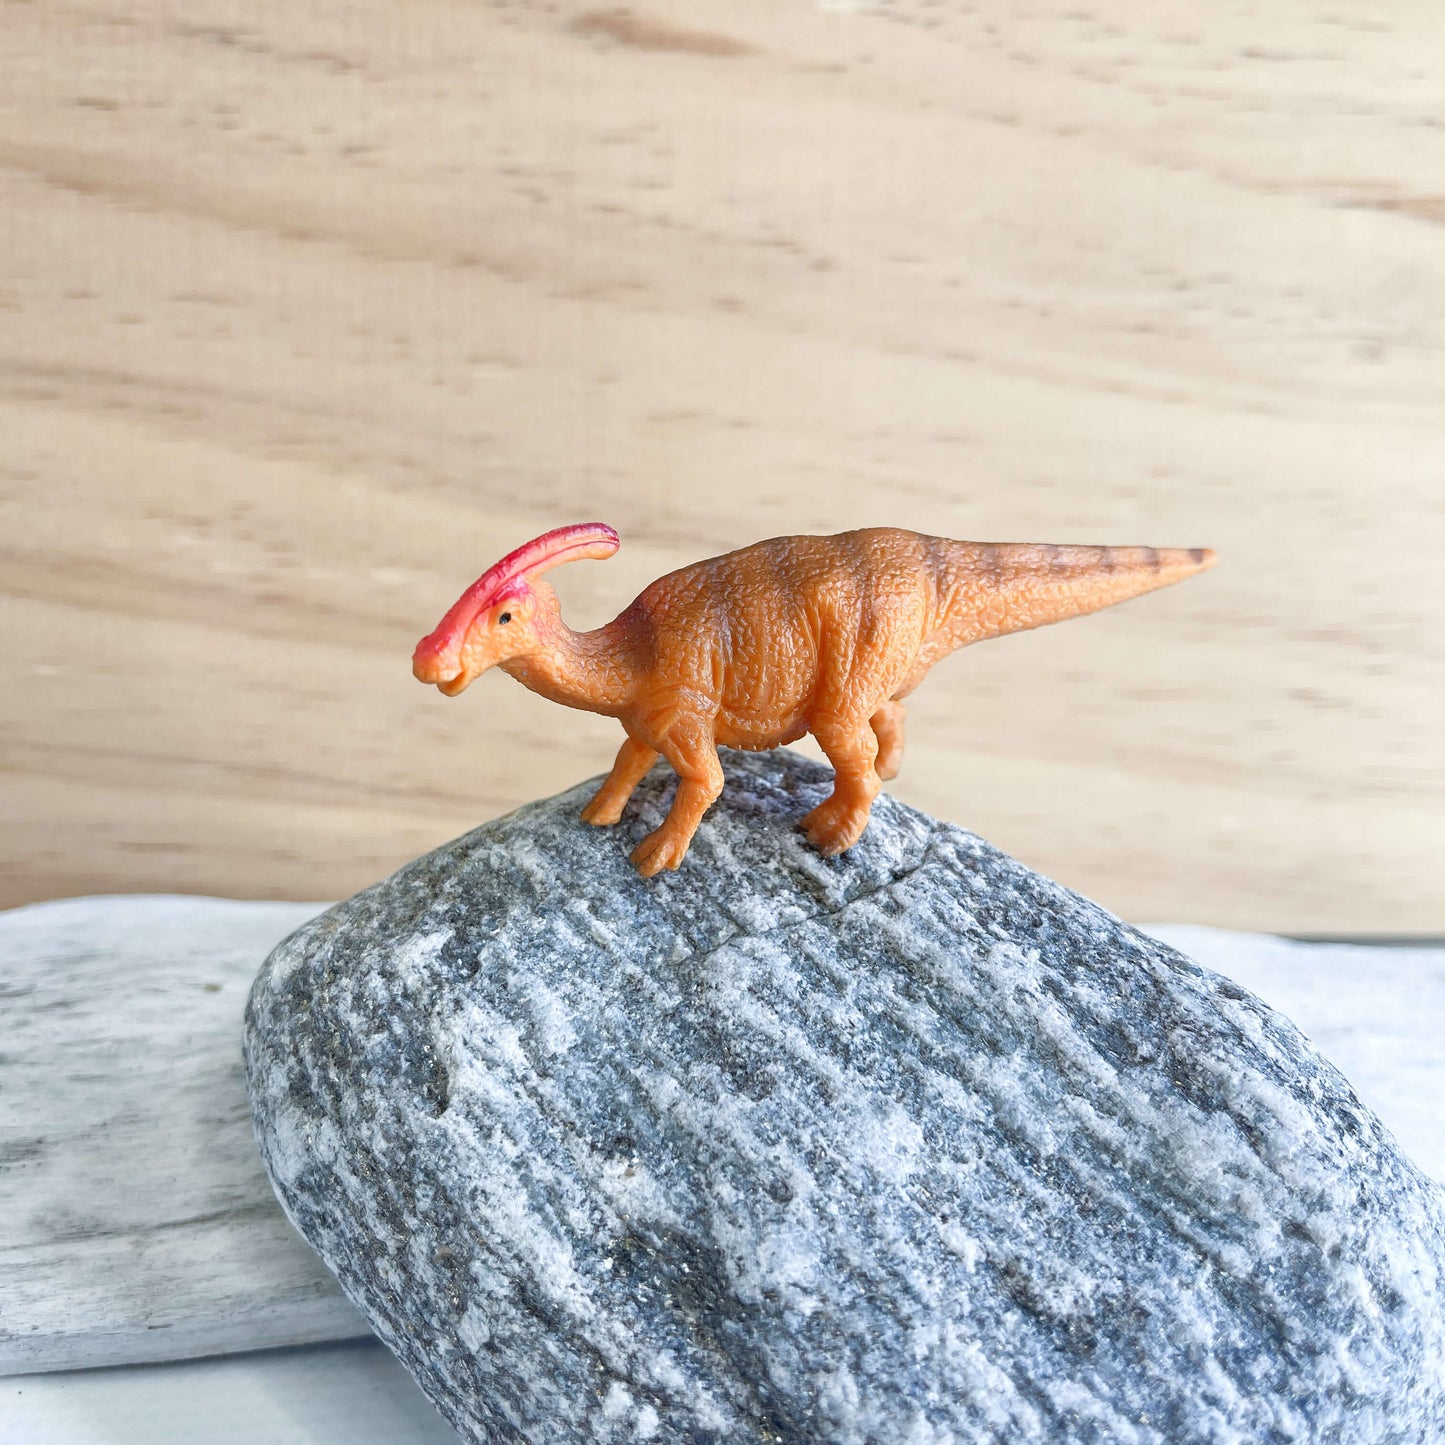 Mini dinosaur figurines.